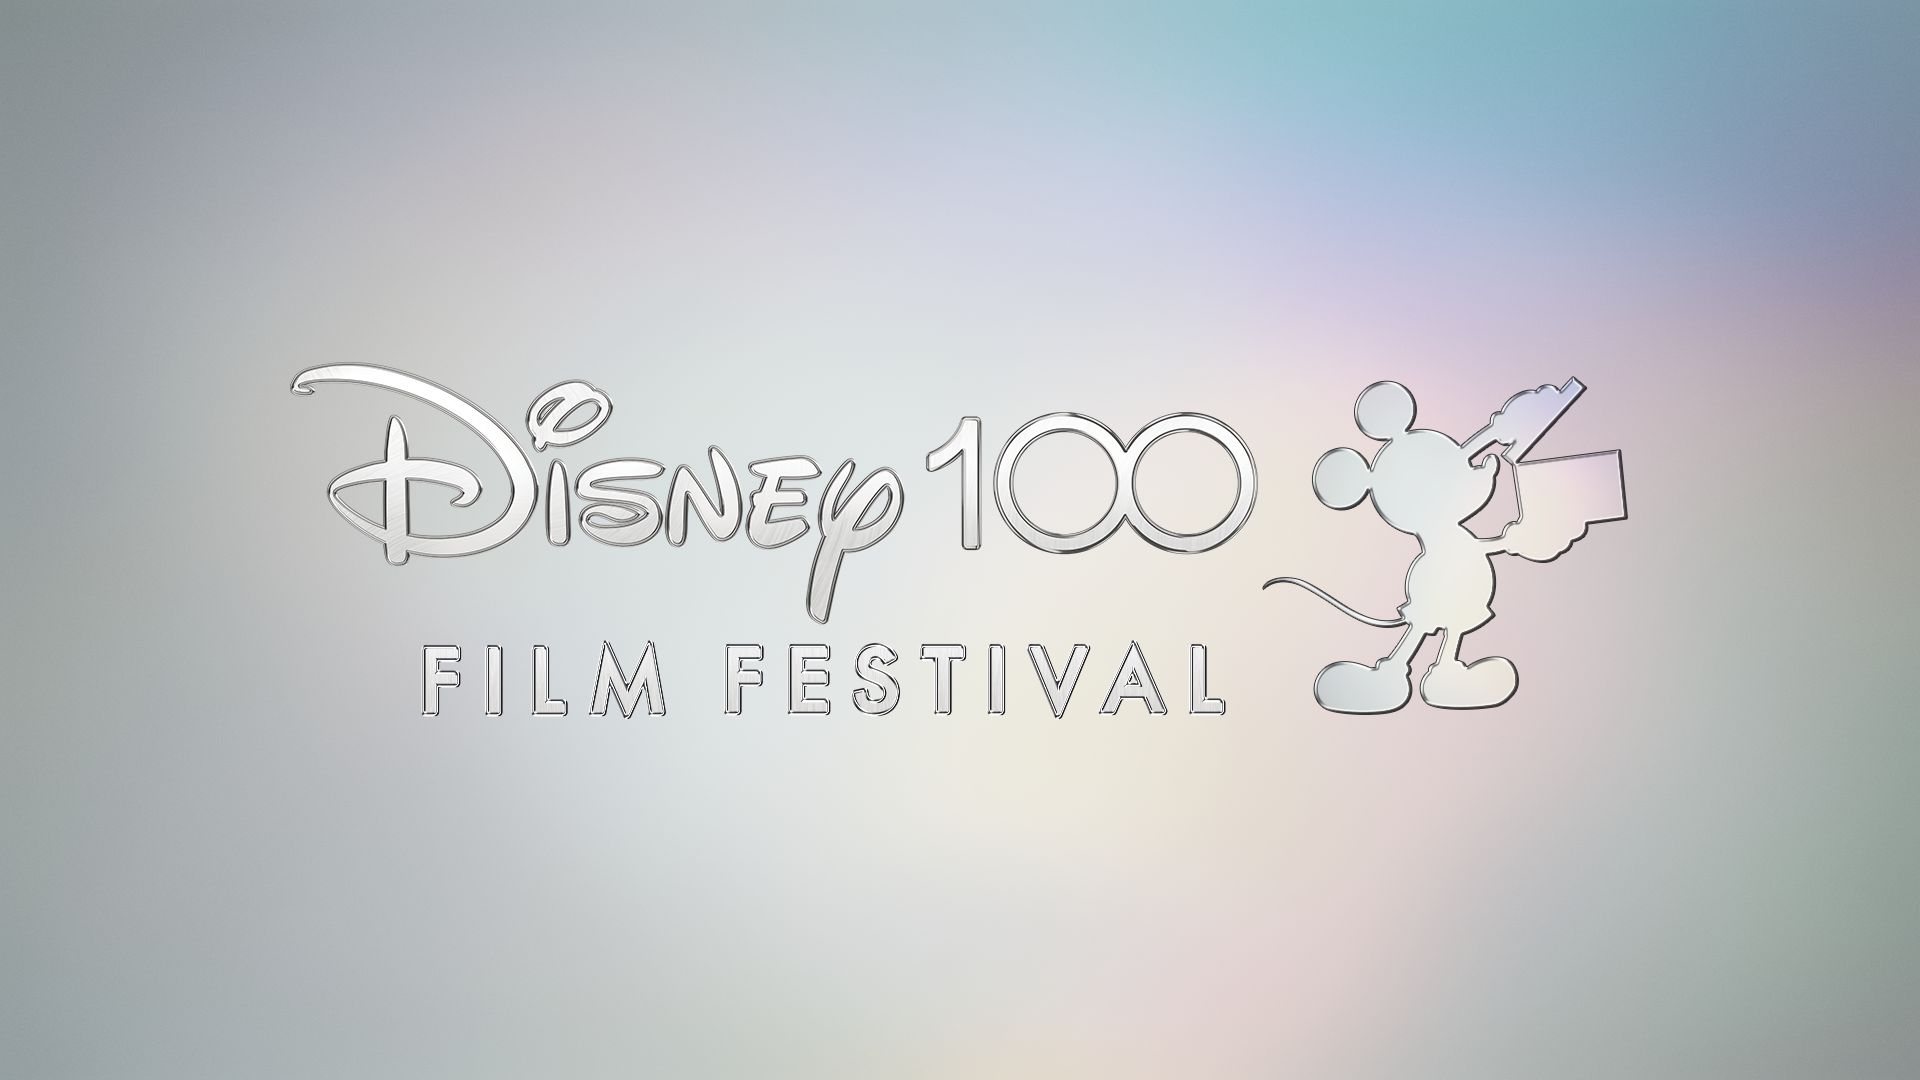 ディズニー・アニメ8作品を上映するイベント「ディズニー100 フィルム